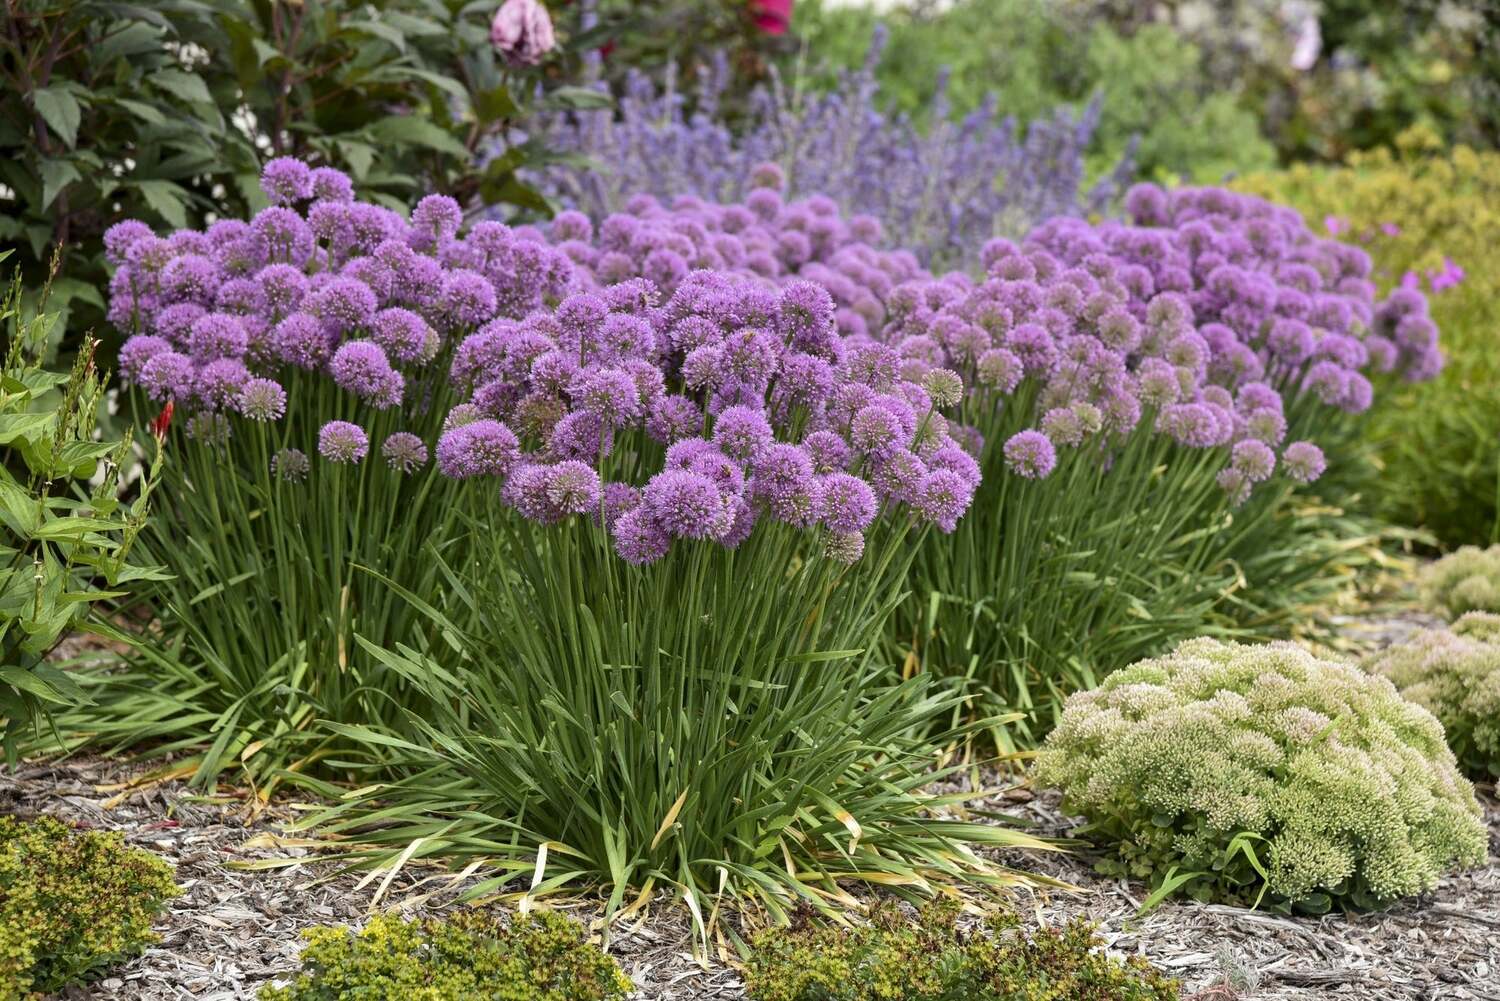 14 Unbelievable Facts About Allium - Facts.net